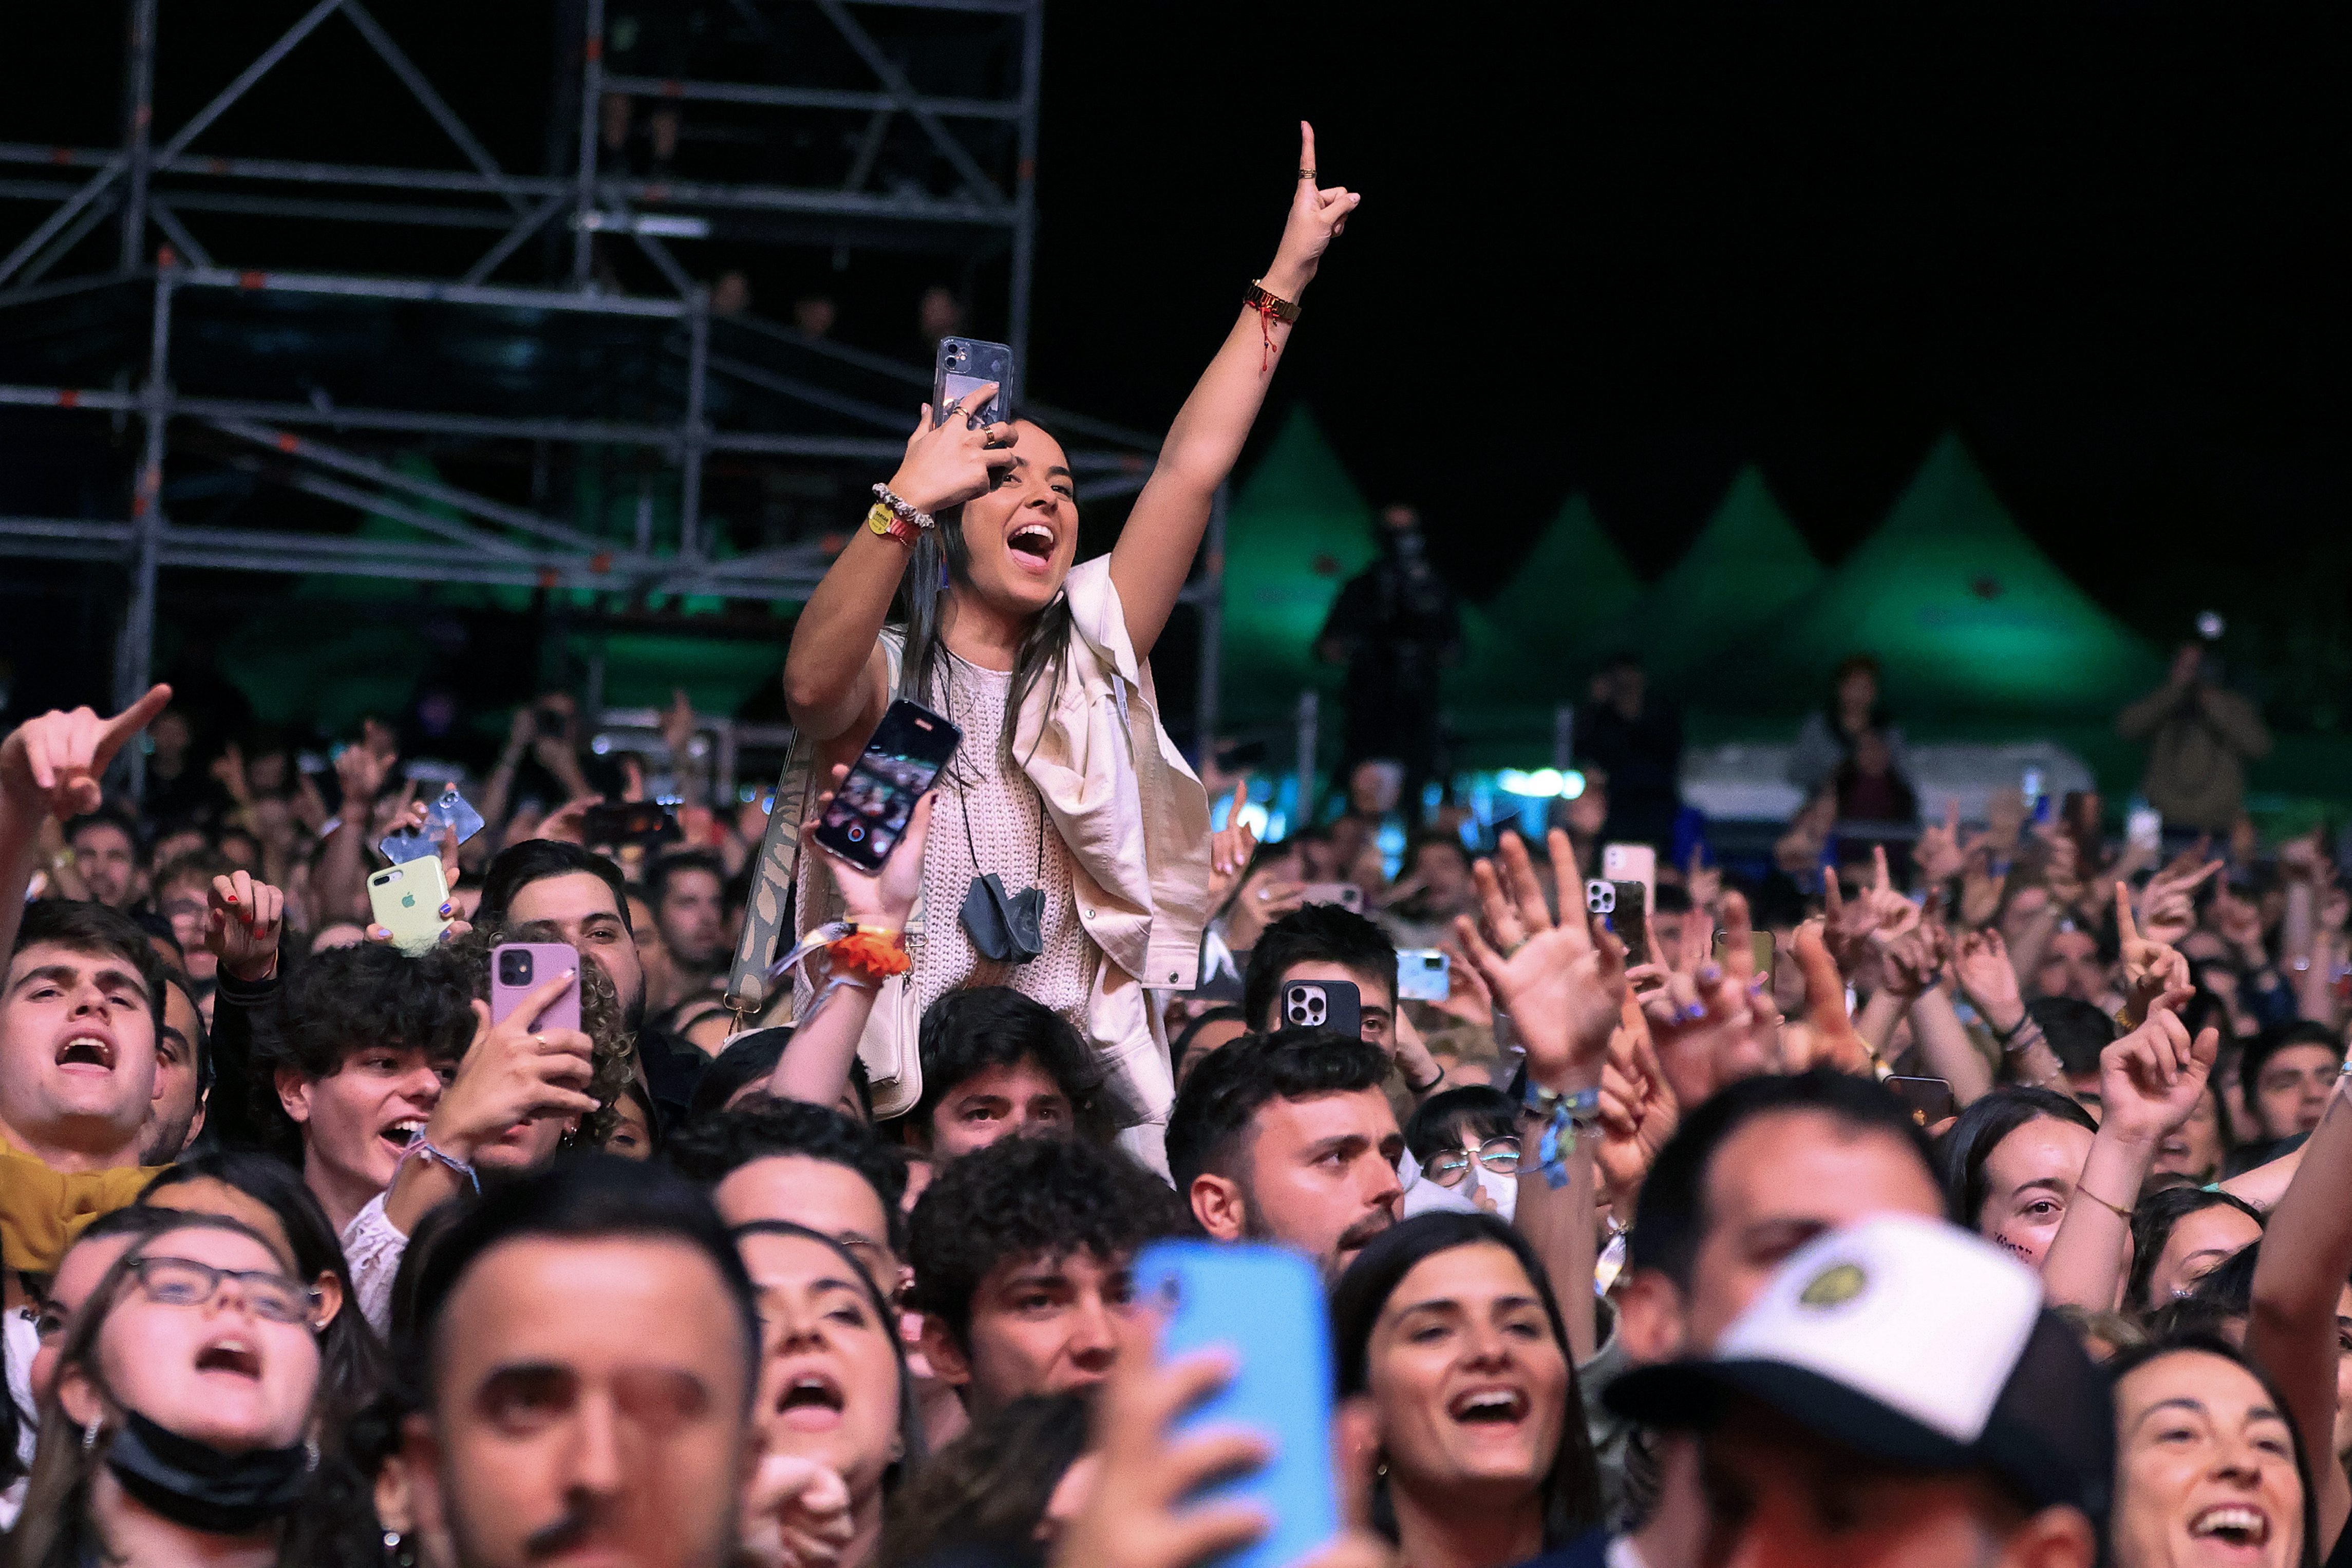 El público anima durante el concierto de Dani Martín en la última jornada del Festival SanSan.